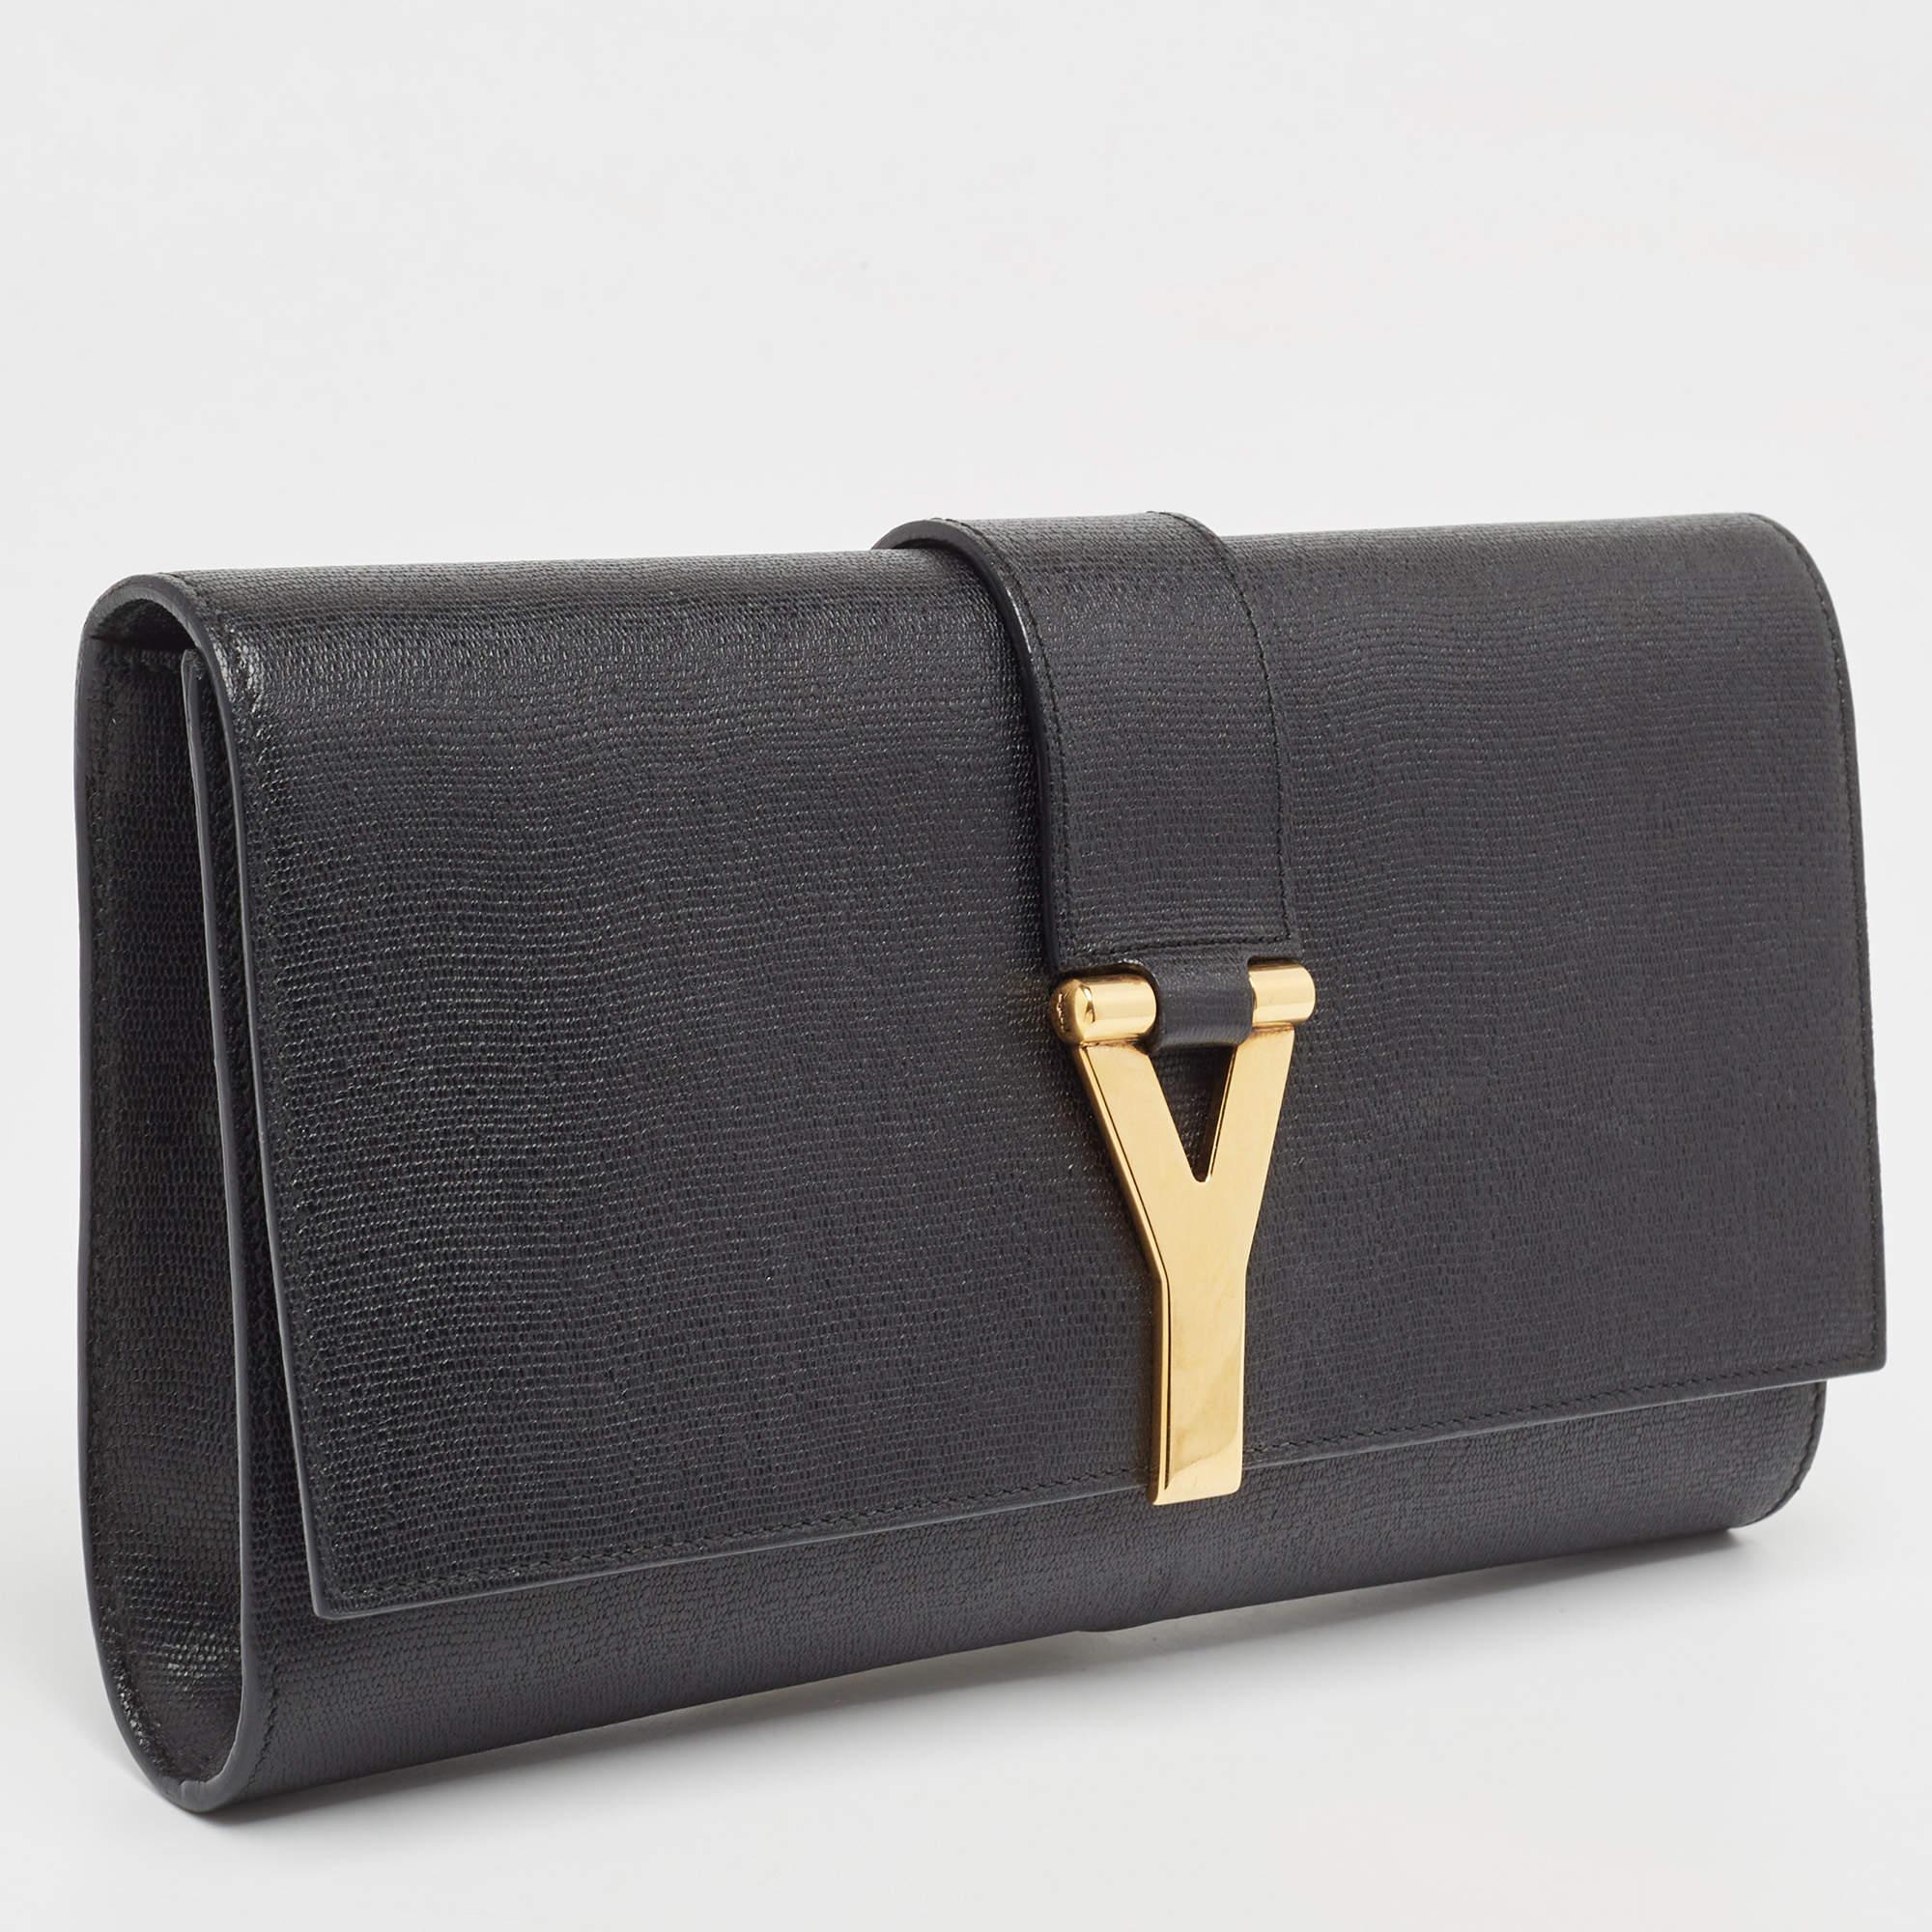 Yves Saint Laurent Black Leather Y-Ligne Clutch In Good Condition For Sale In Dubai, Al Qouz 2